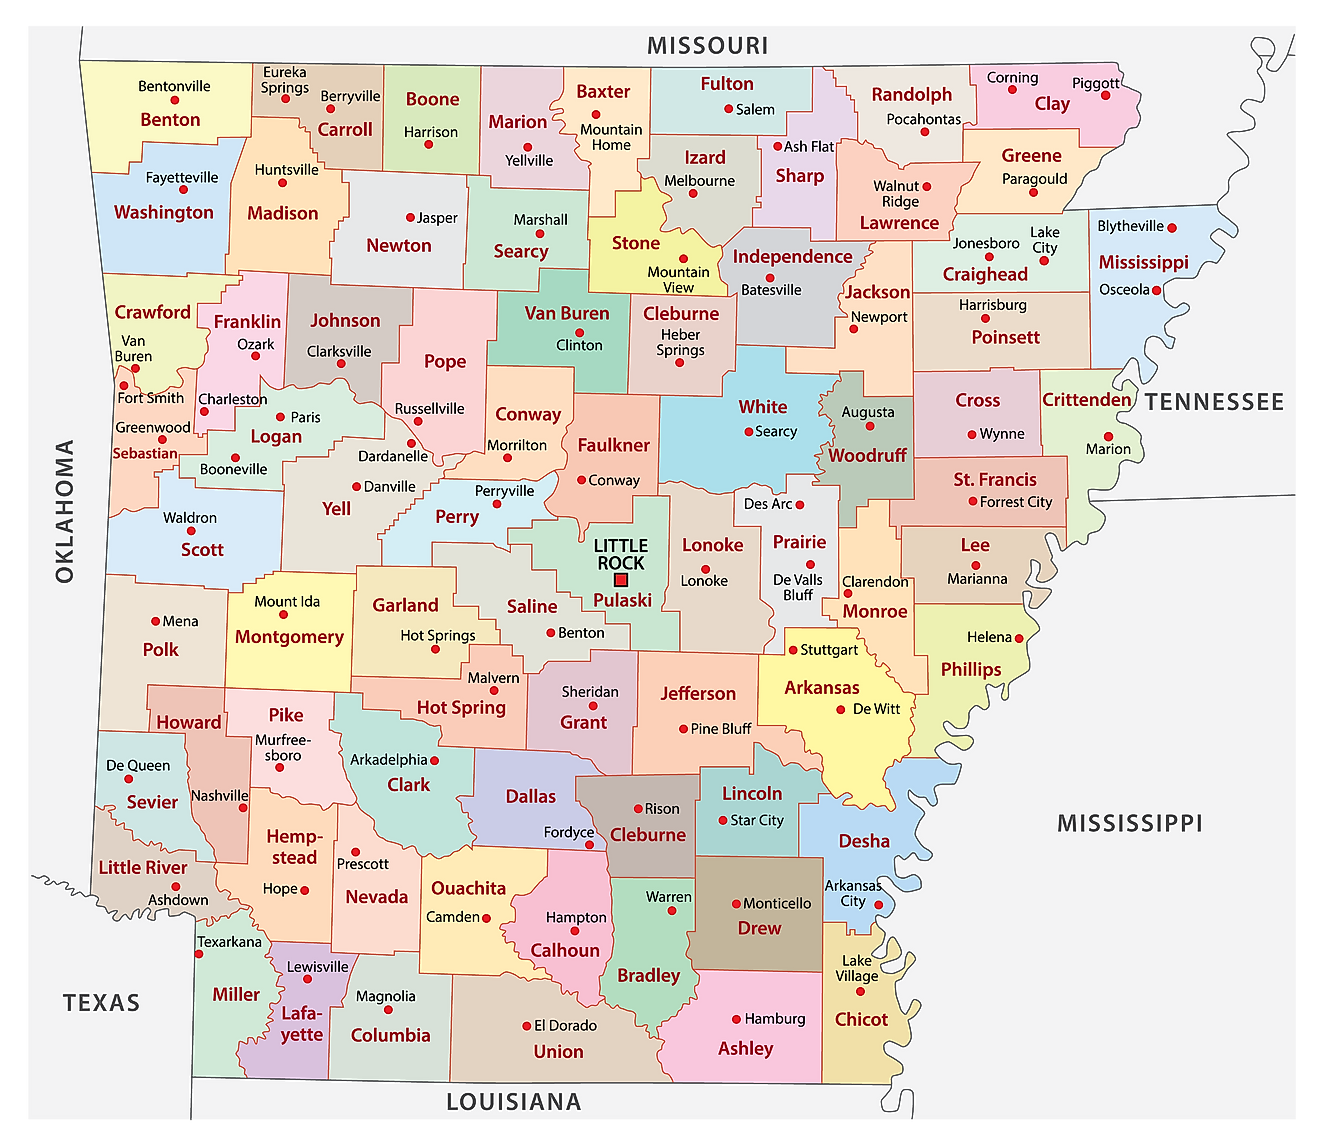 Arkansas Maps & Facts World Atlas